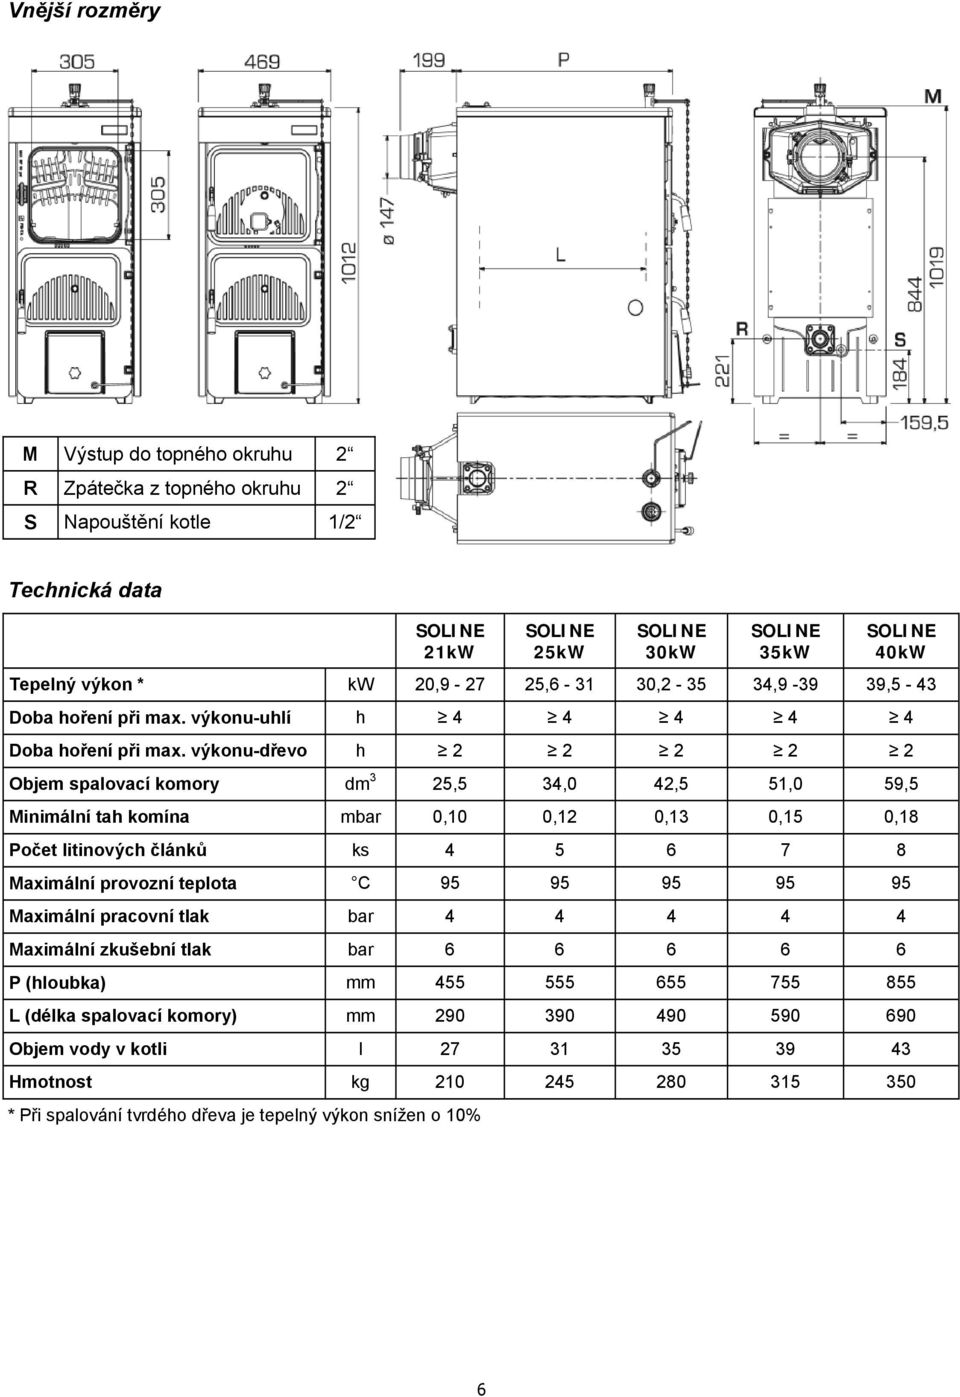 výkonu-dřevo h 2 2 2 2 2 Objem spalovací komory dm 3 25,5 34,0 42,5 51,0 59,5 Minimální tah komína mbar 0,10 0,12 0,13 0,15 0,18 Počet litinových článků ks 4 5 6 7 8 Maximální provozní teplota C 95